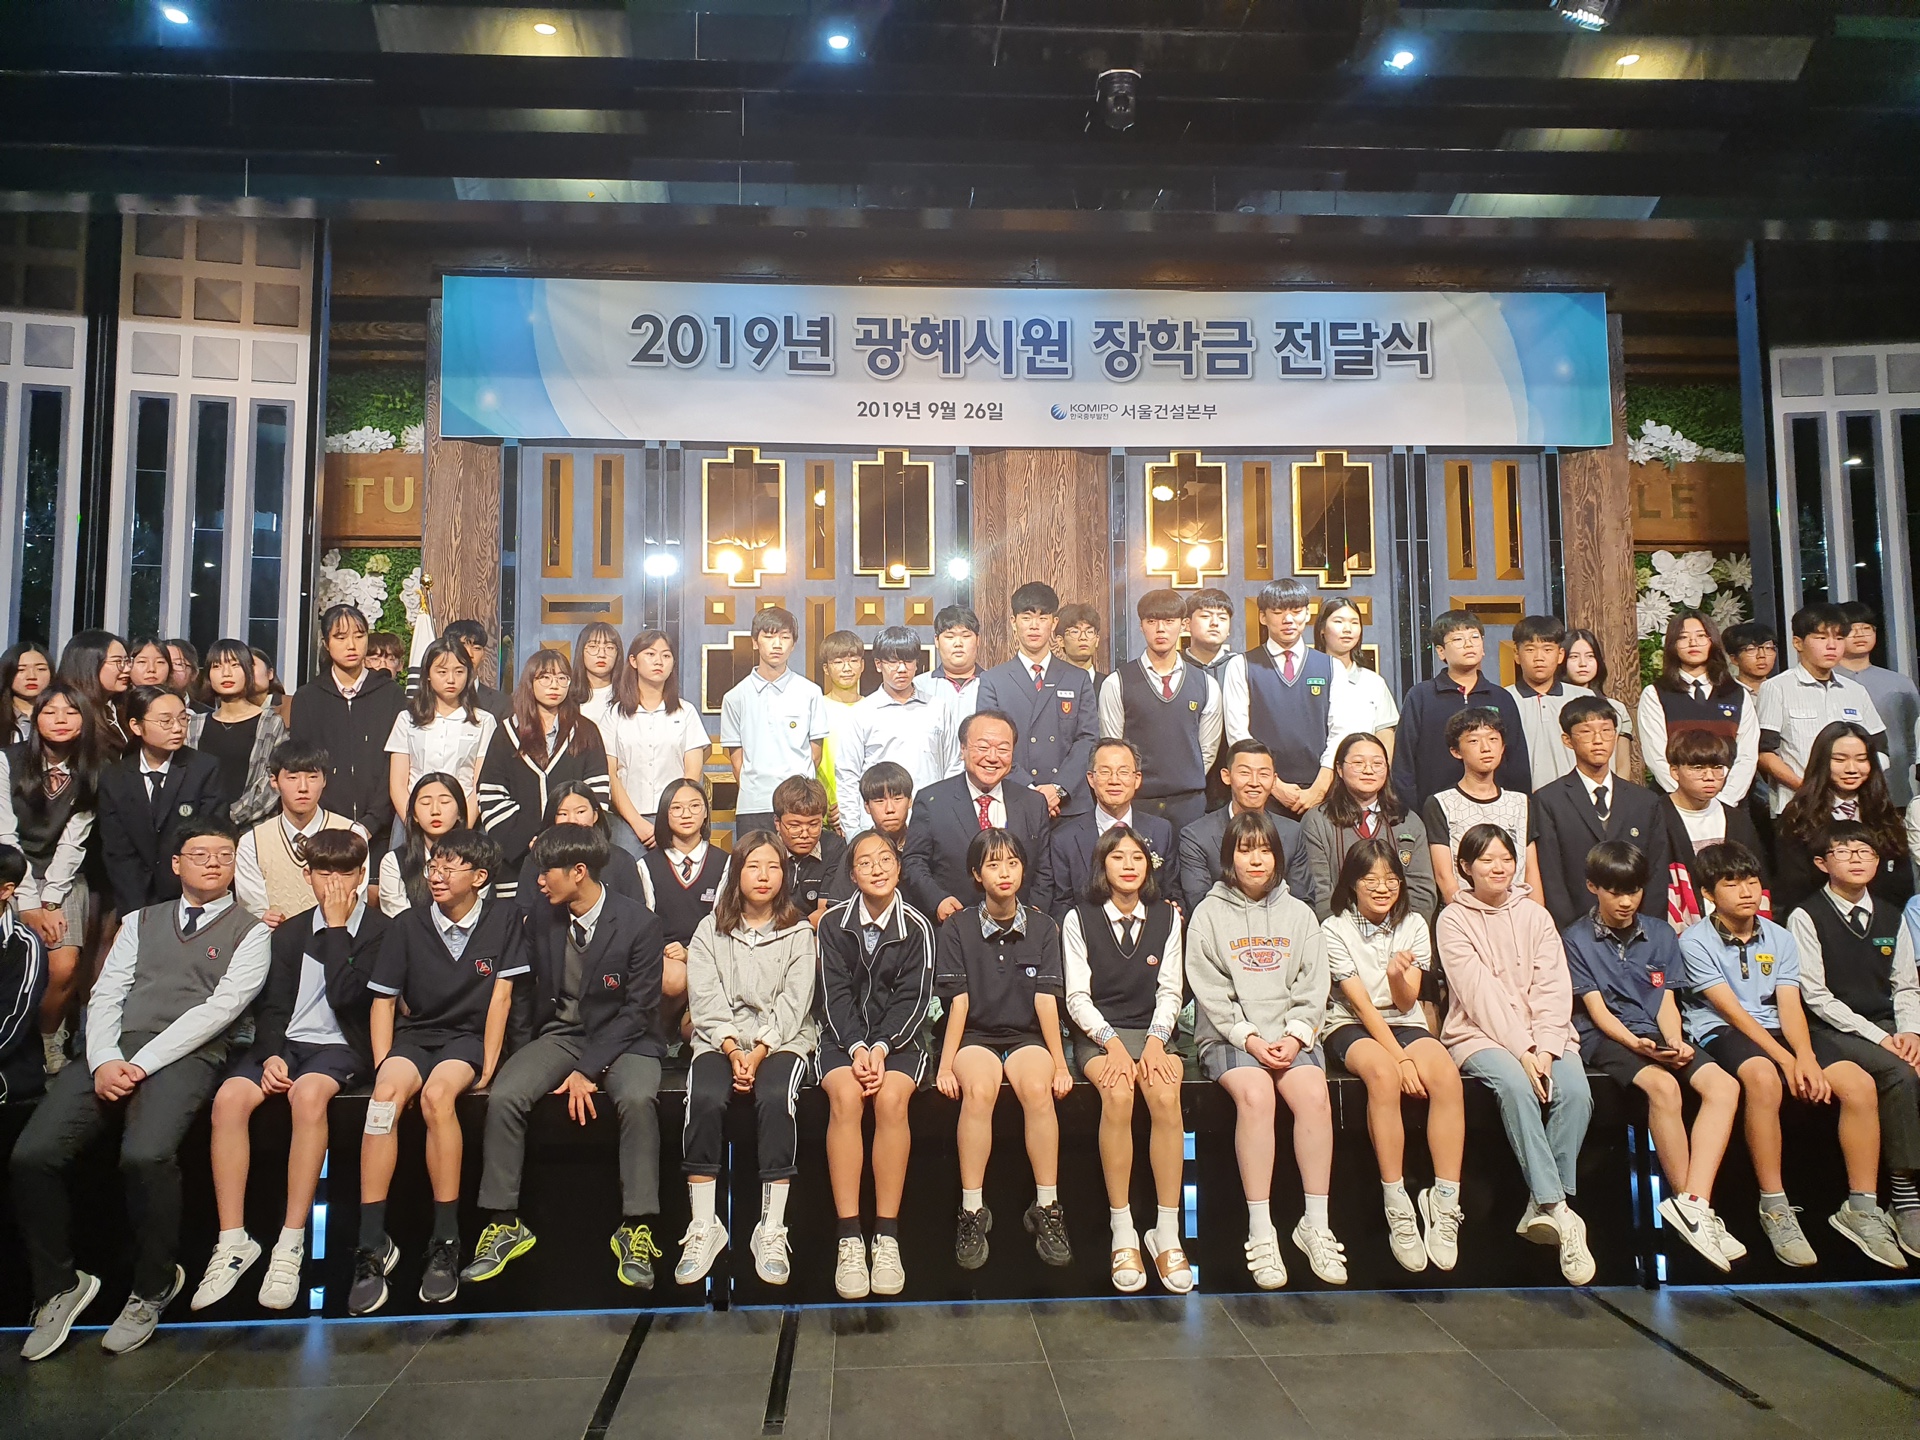 [서울] 2019 광혜시원 장학금 전달식 개최